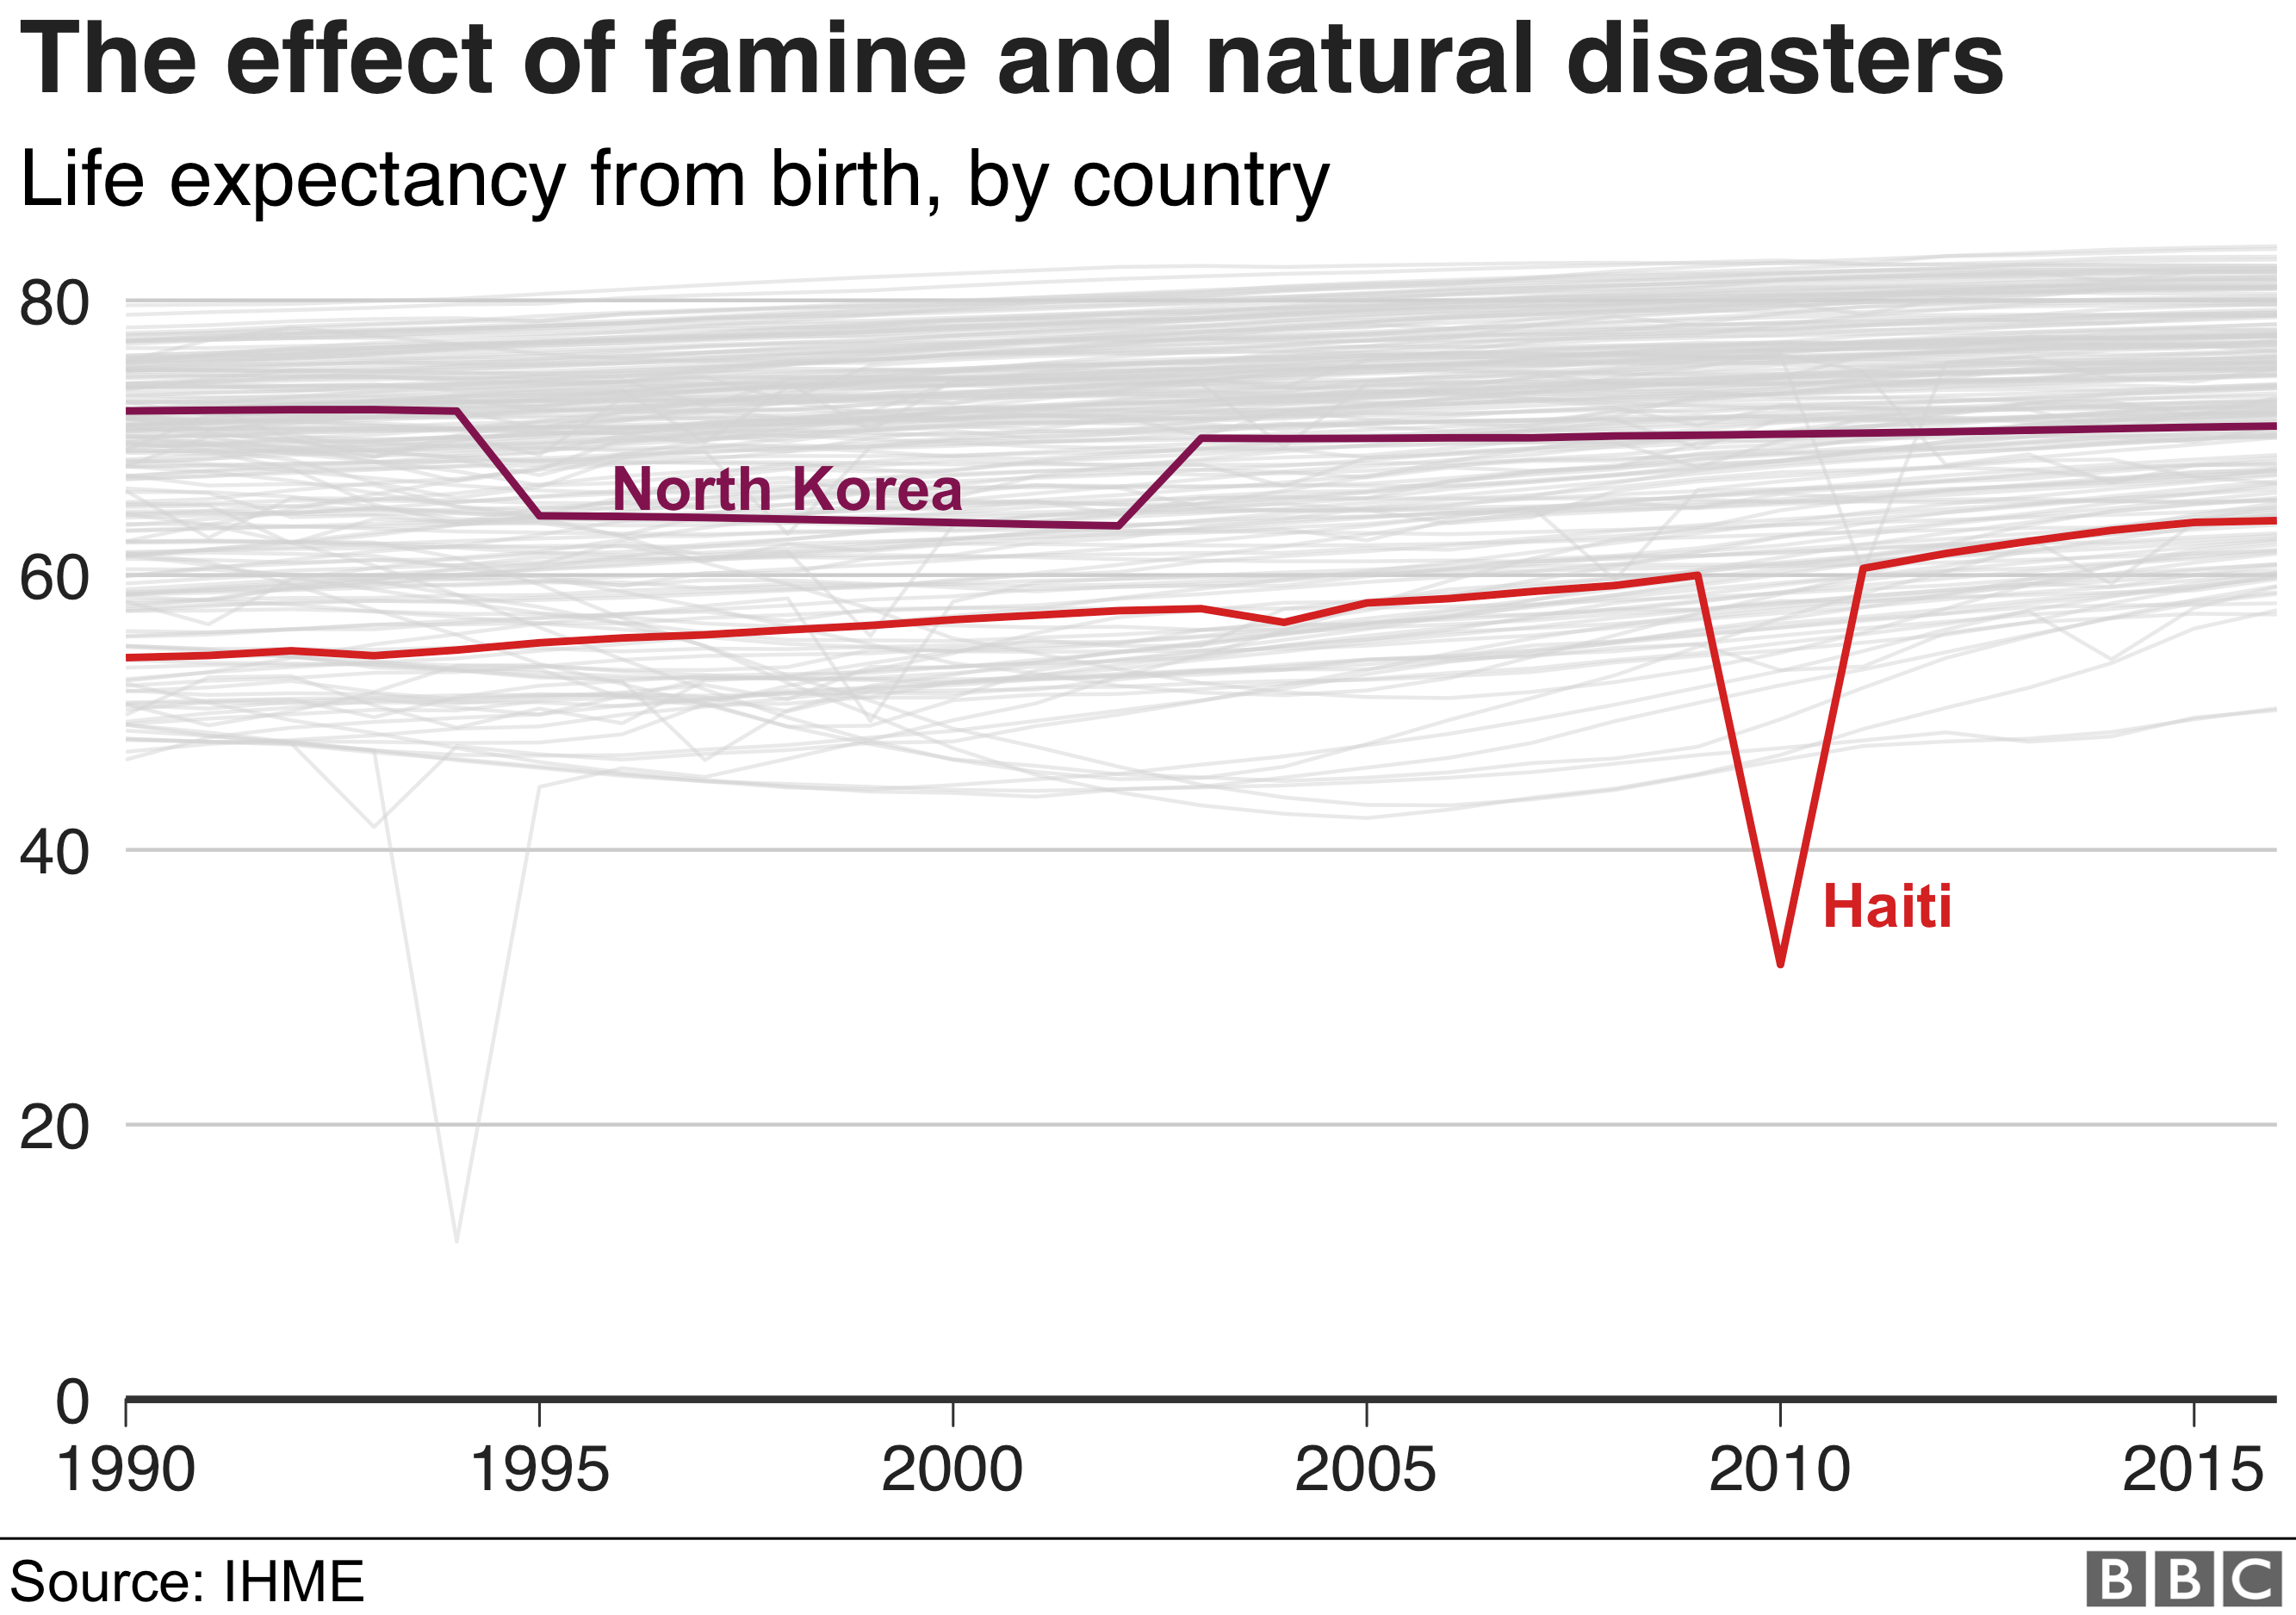 Голод в Северной Корее и сильное землетрясение на Гаити оказали огромное негативное влияние на продолжительность жизни